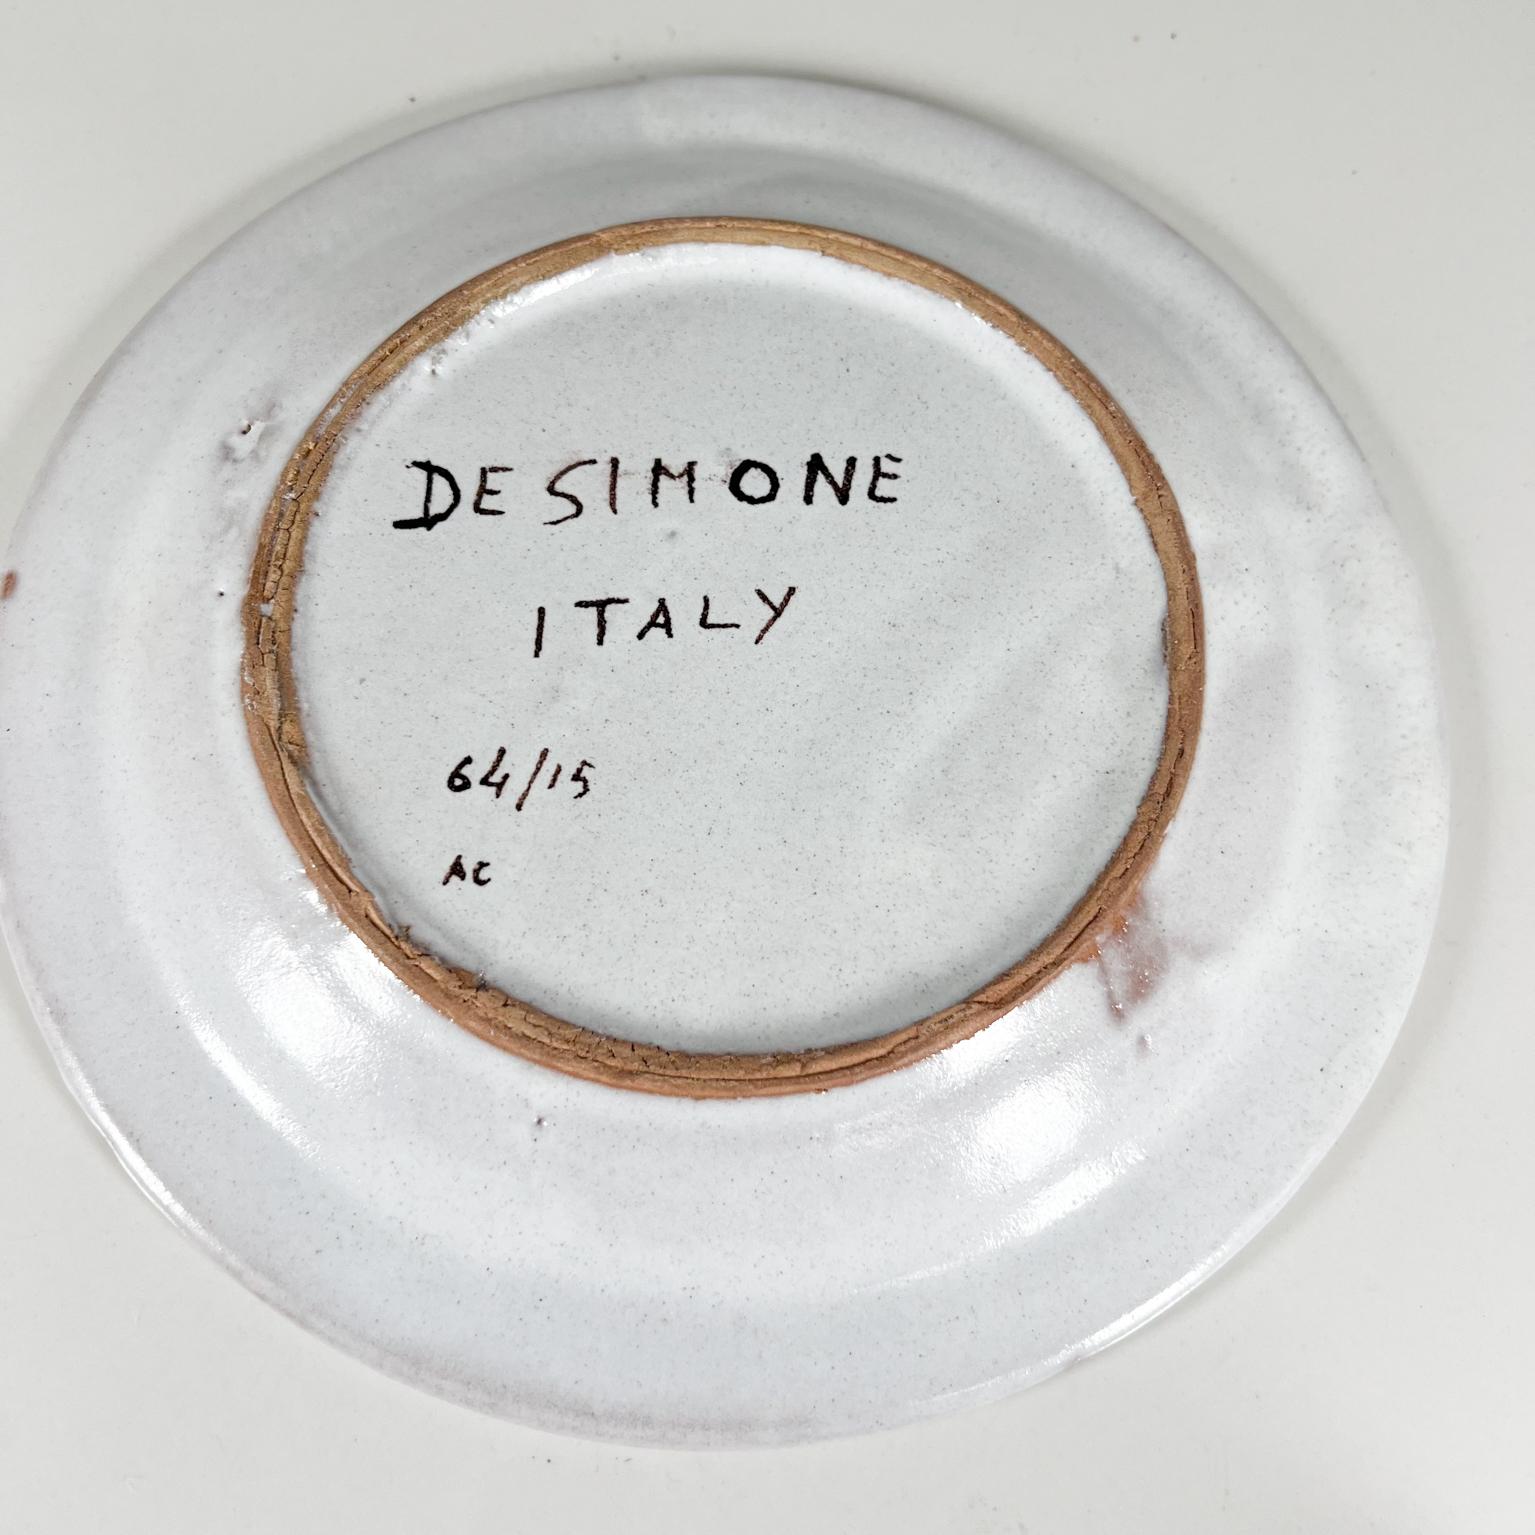 Desimone Keramik-Keramik-Töpferwaren Italien, handbemalt, Gelb, Rot, Grün 3